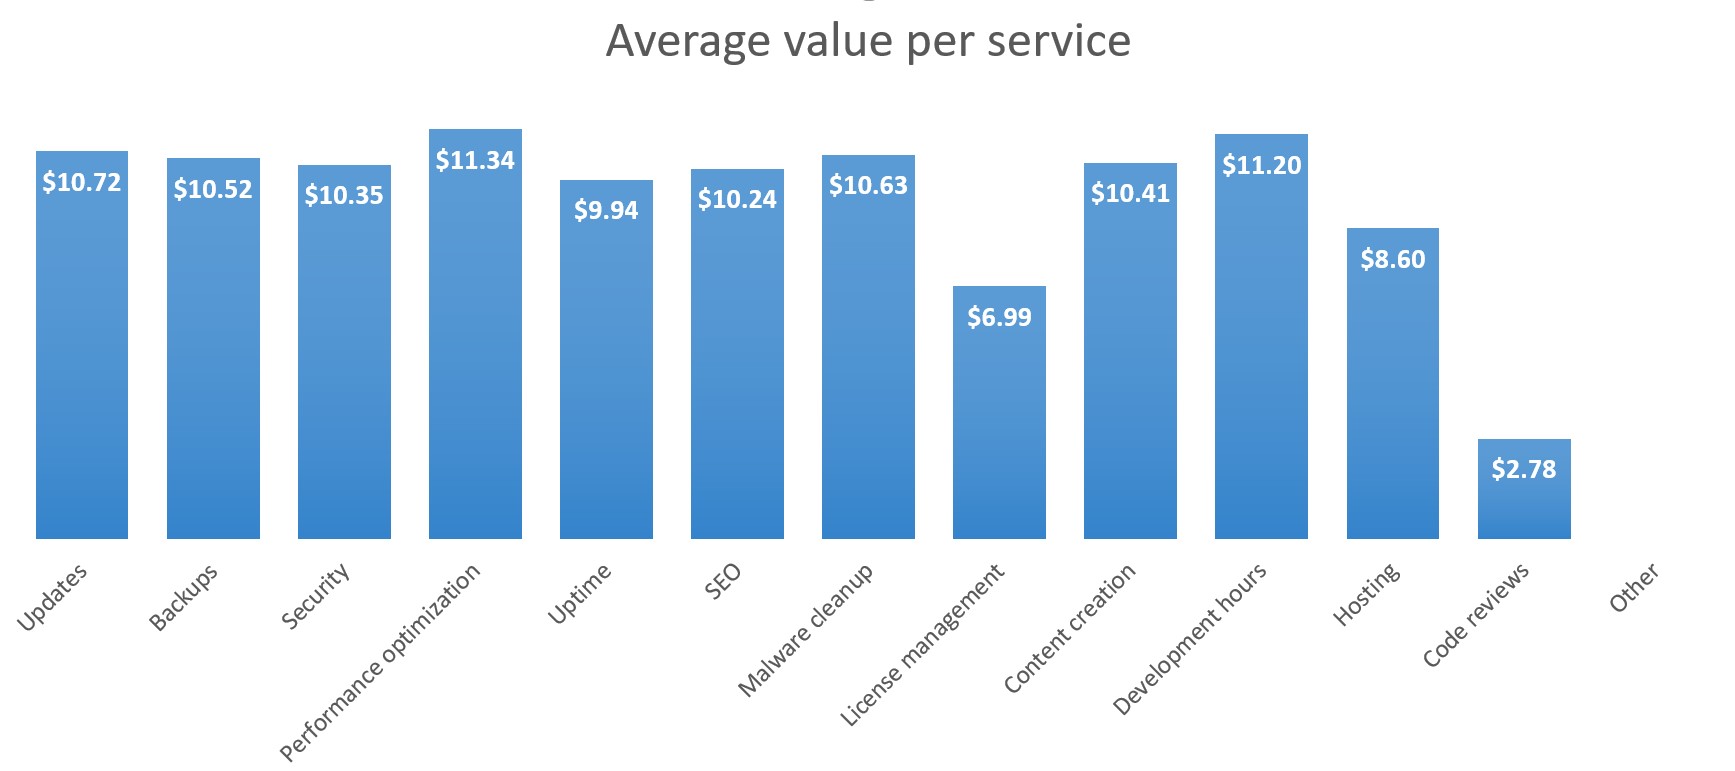 Single tier: Average value per service